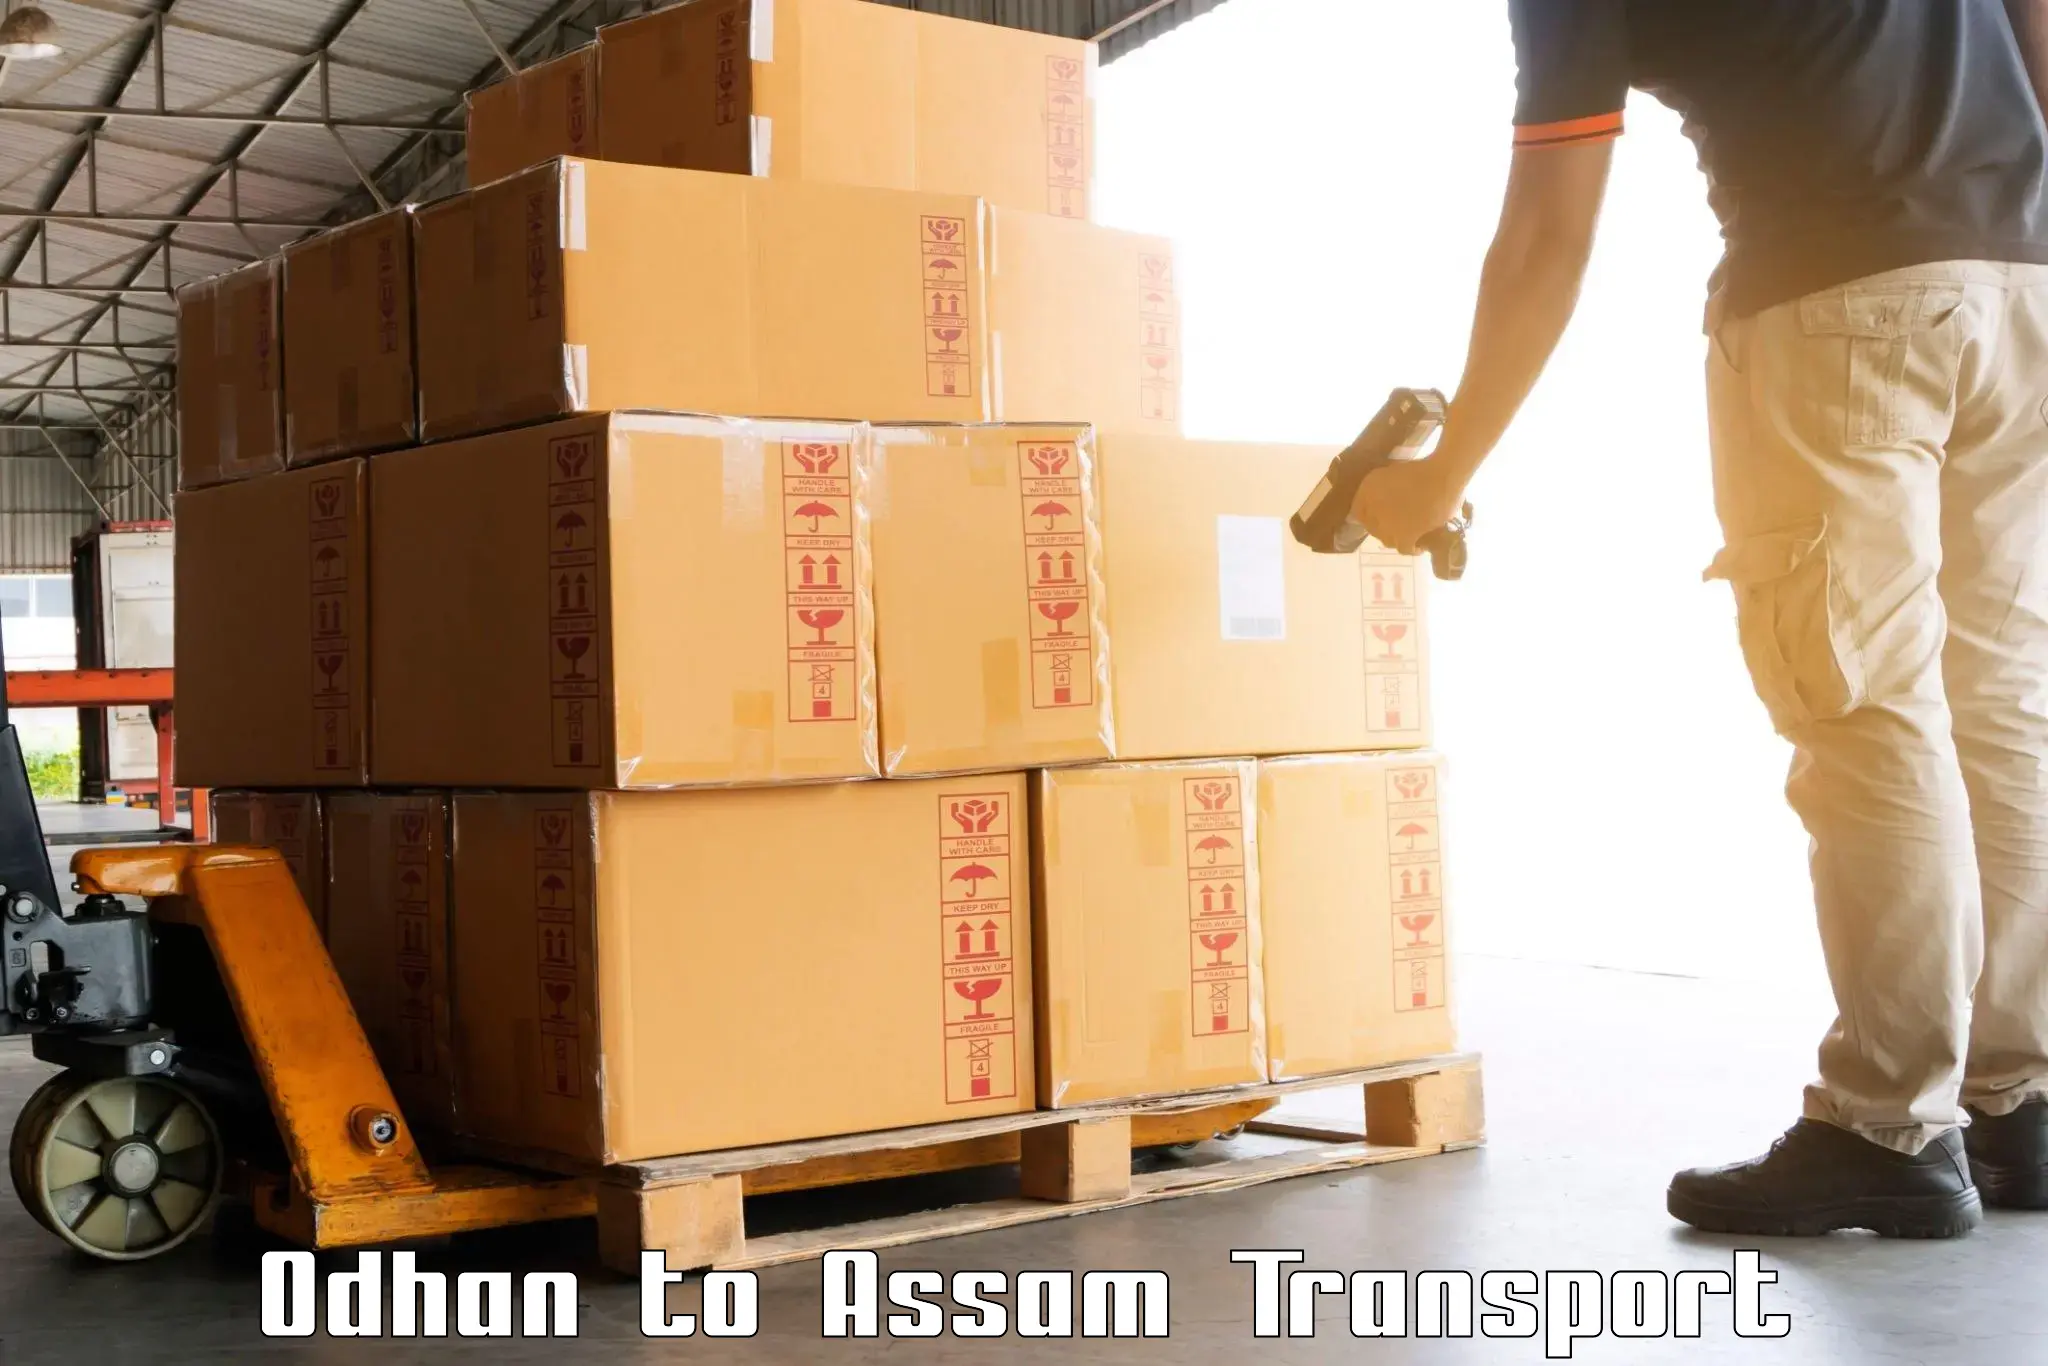 Online transport booking Odhan to Bilasipara